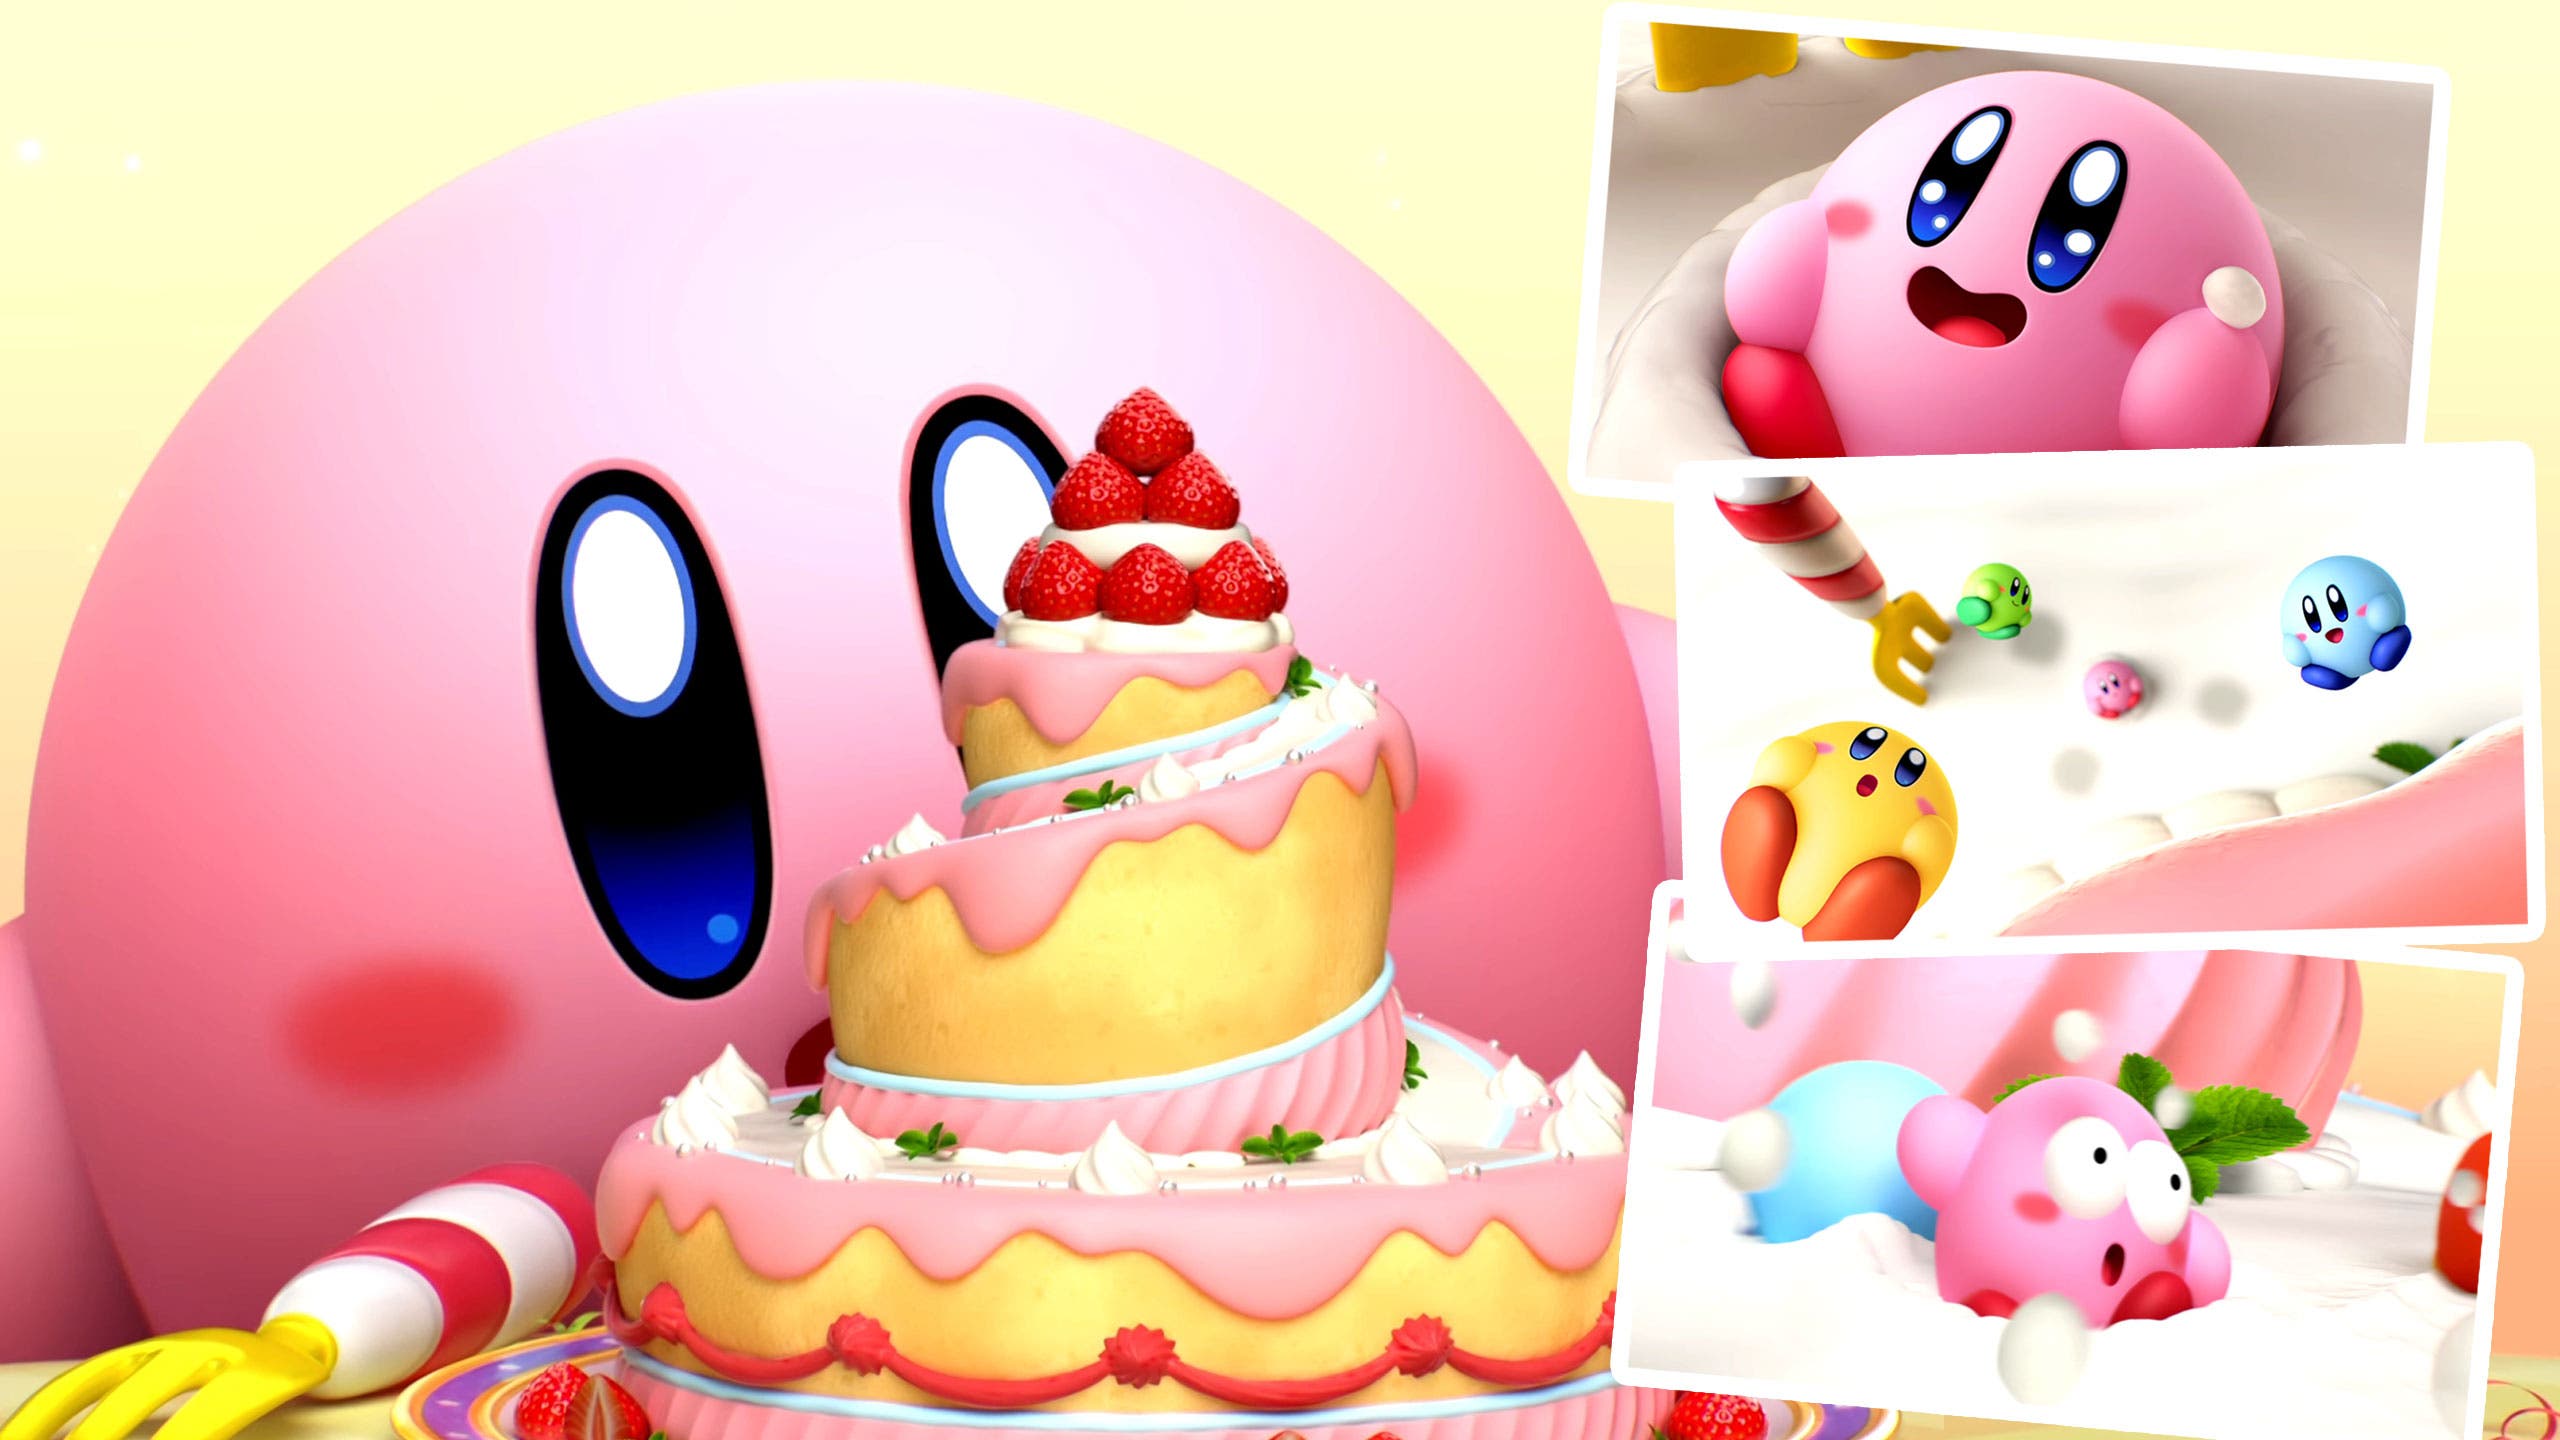 Se comparte la extremadamente adorable intro completa de Kirby’s Dream Buffet